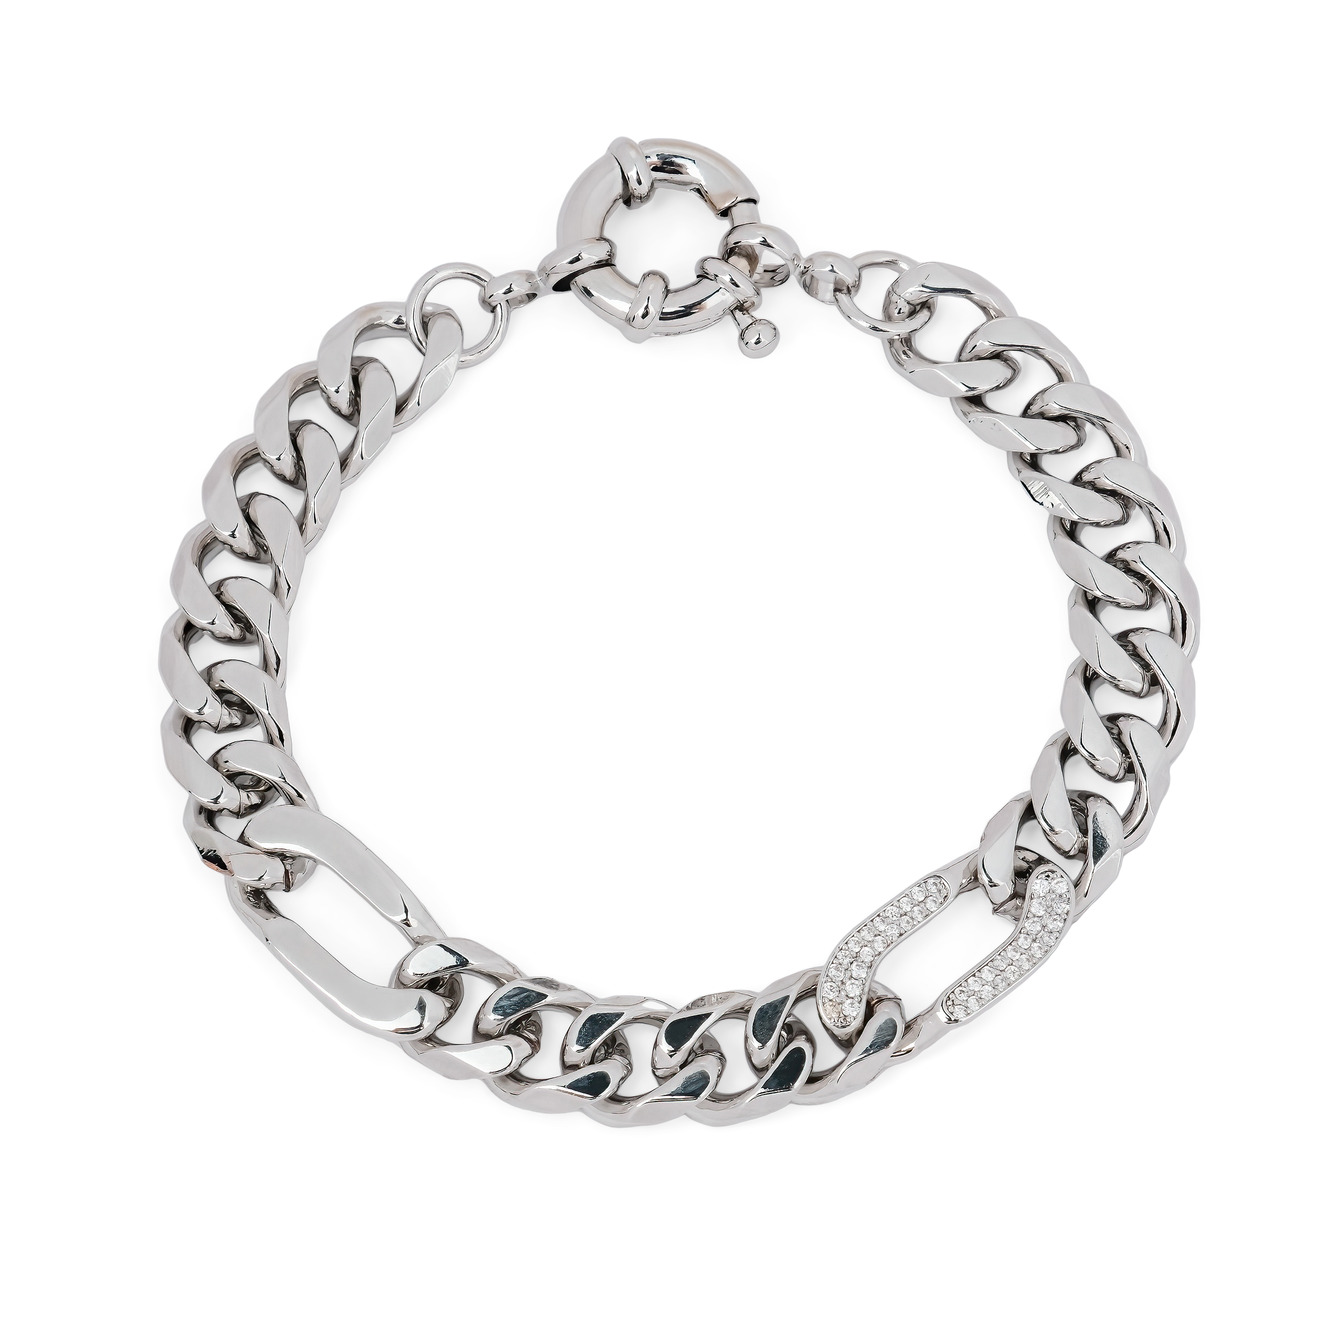 Herald Percy Серебристый браслет-цепь со звеньями из кристаллов цена и фото